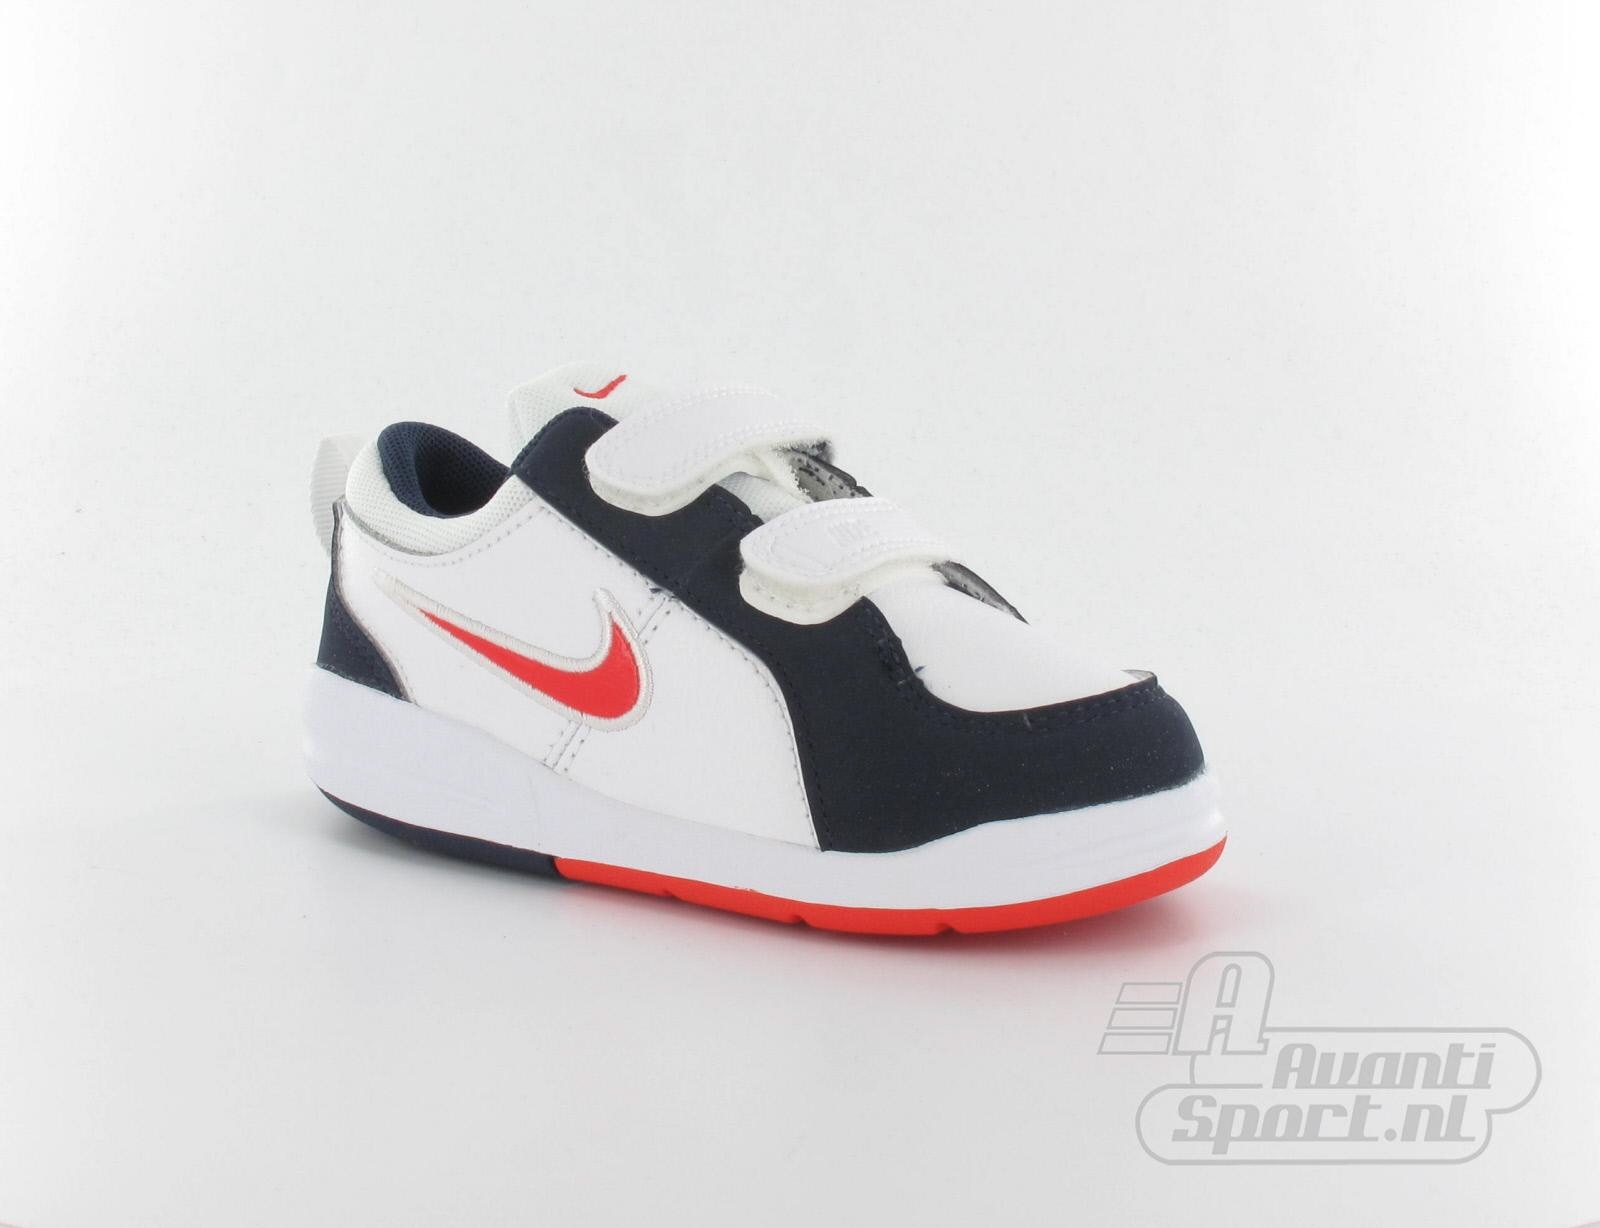 Avantisport - Nike - Pico 4 (Tdv) - Babyschoenen